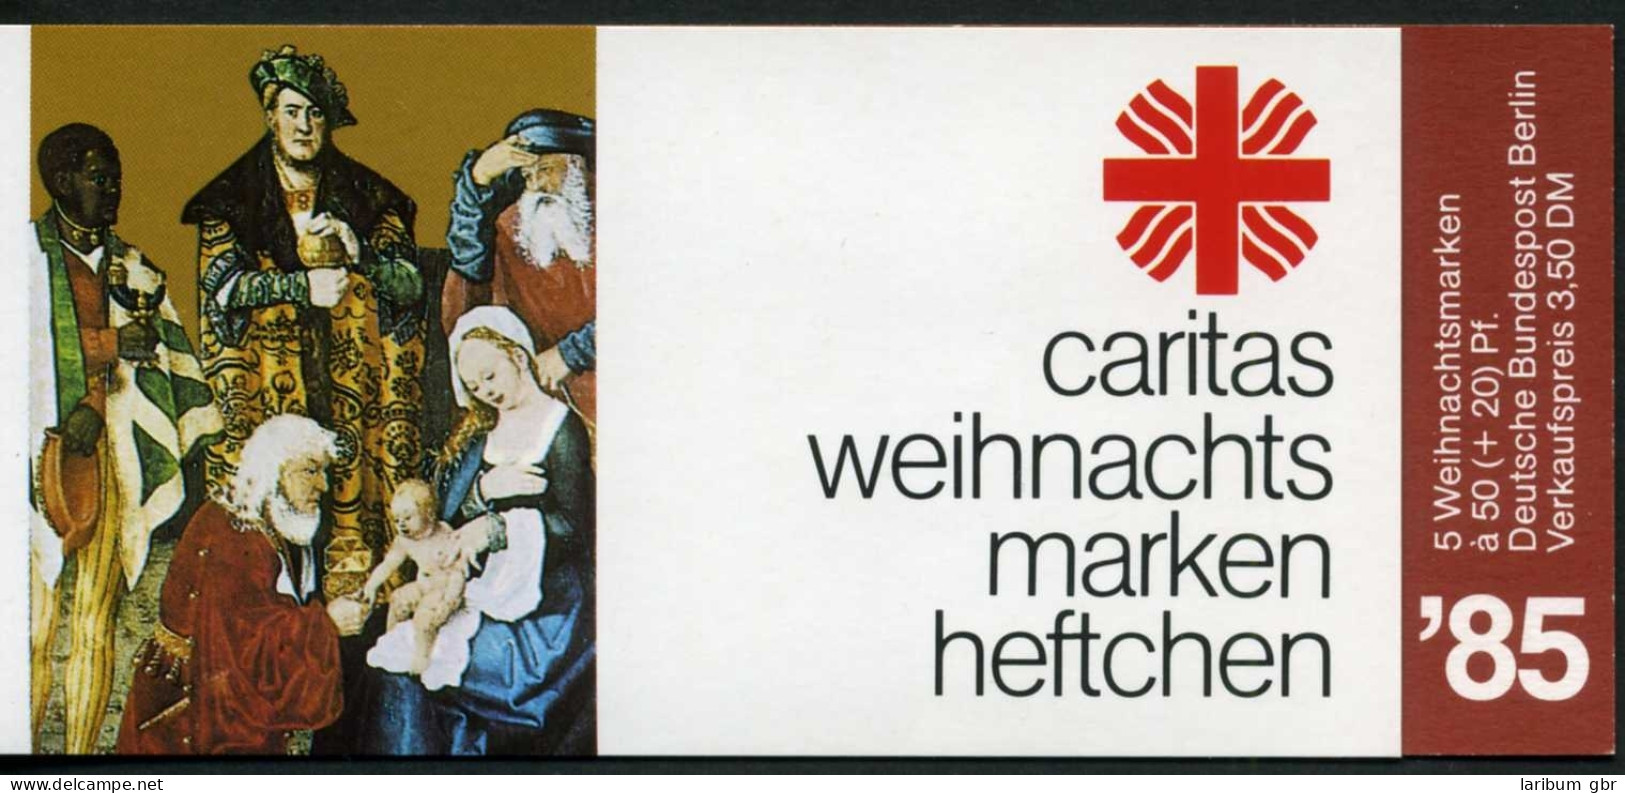 Berlin Caritas Markenheftchen 1985 749 Postfrisch #IS708 - Booklets